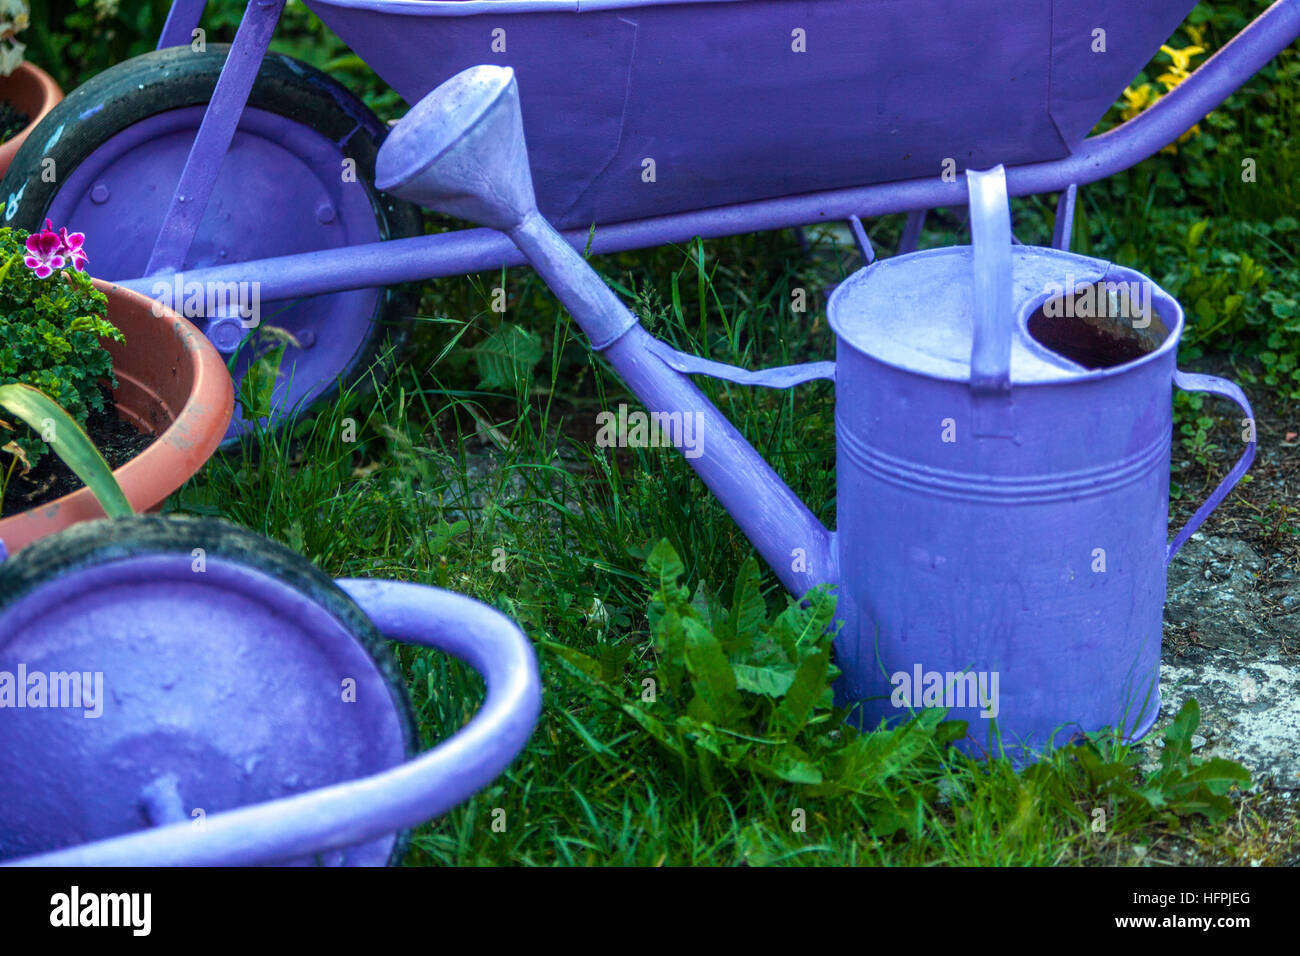 Peint bleu éléments utilisés dans le jardin, arrosage et brouette Banque D'Images